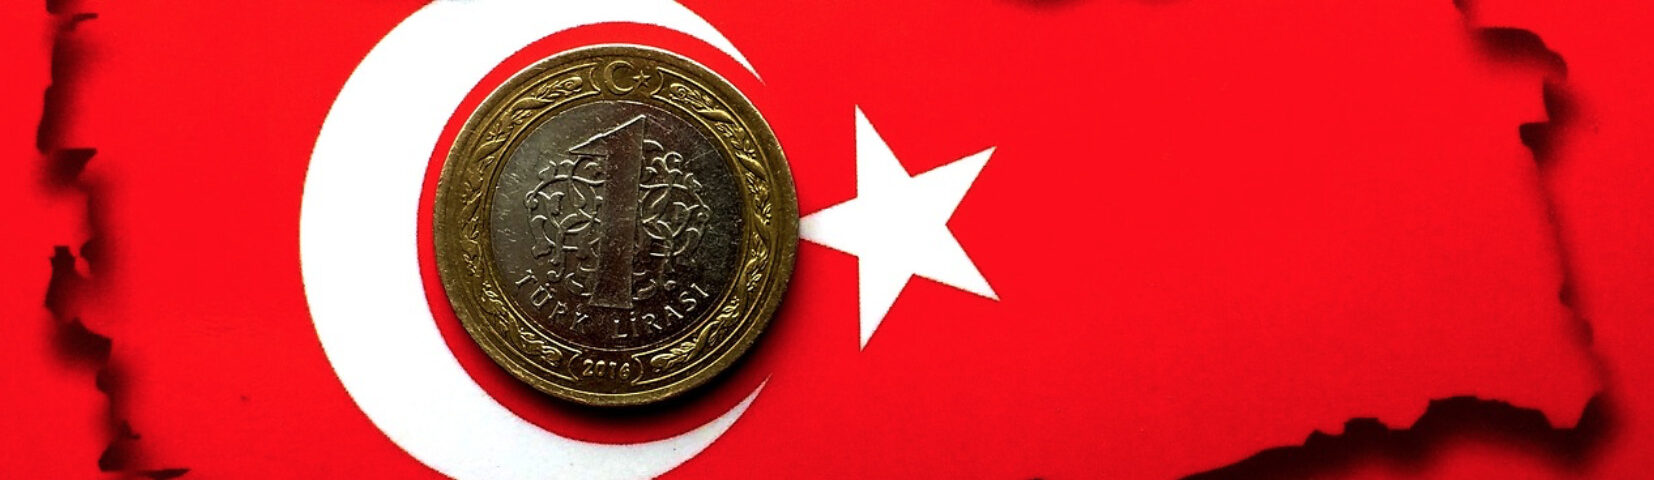 kan man veksle danske kroner i Tyrkiet, veksle i tyrkiet, kan man bruge danske penge i tyrkiet, tyrkiets valuta, tyrkisk lira, tyrkiet rejsetip